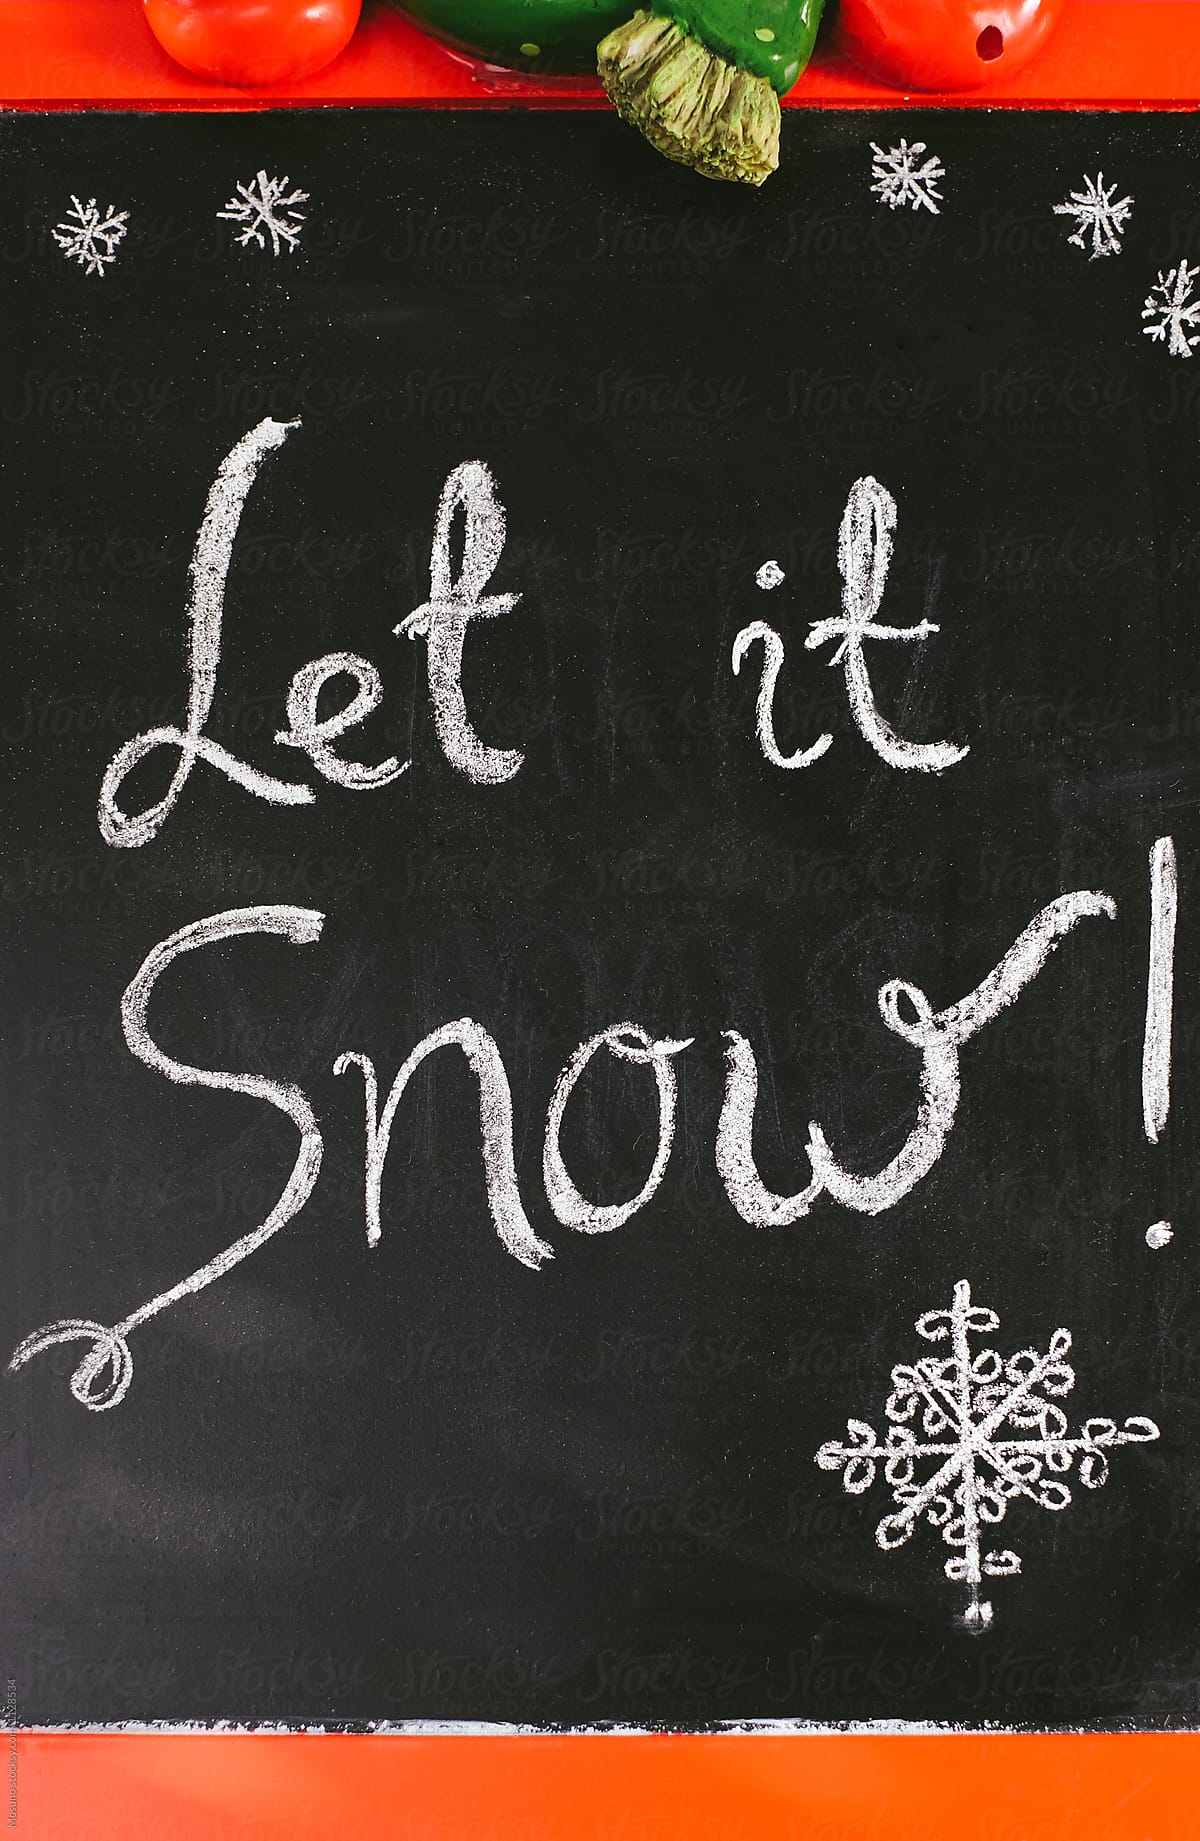 Let It Snow Written on a Black Board